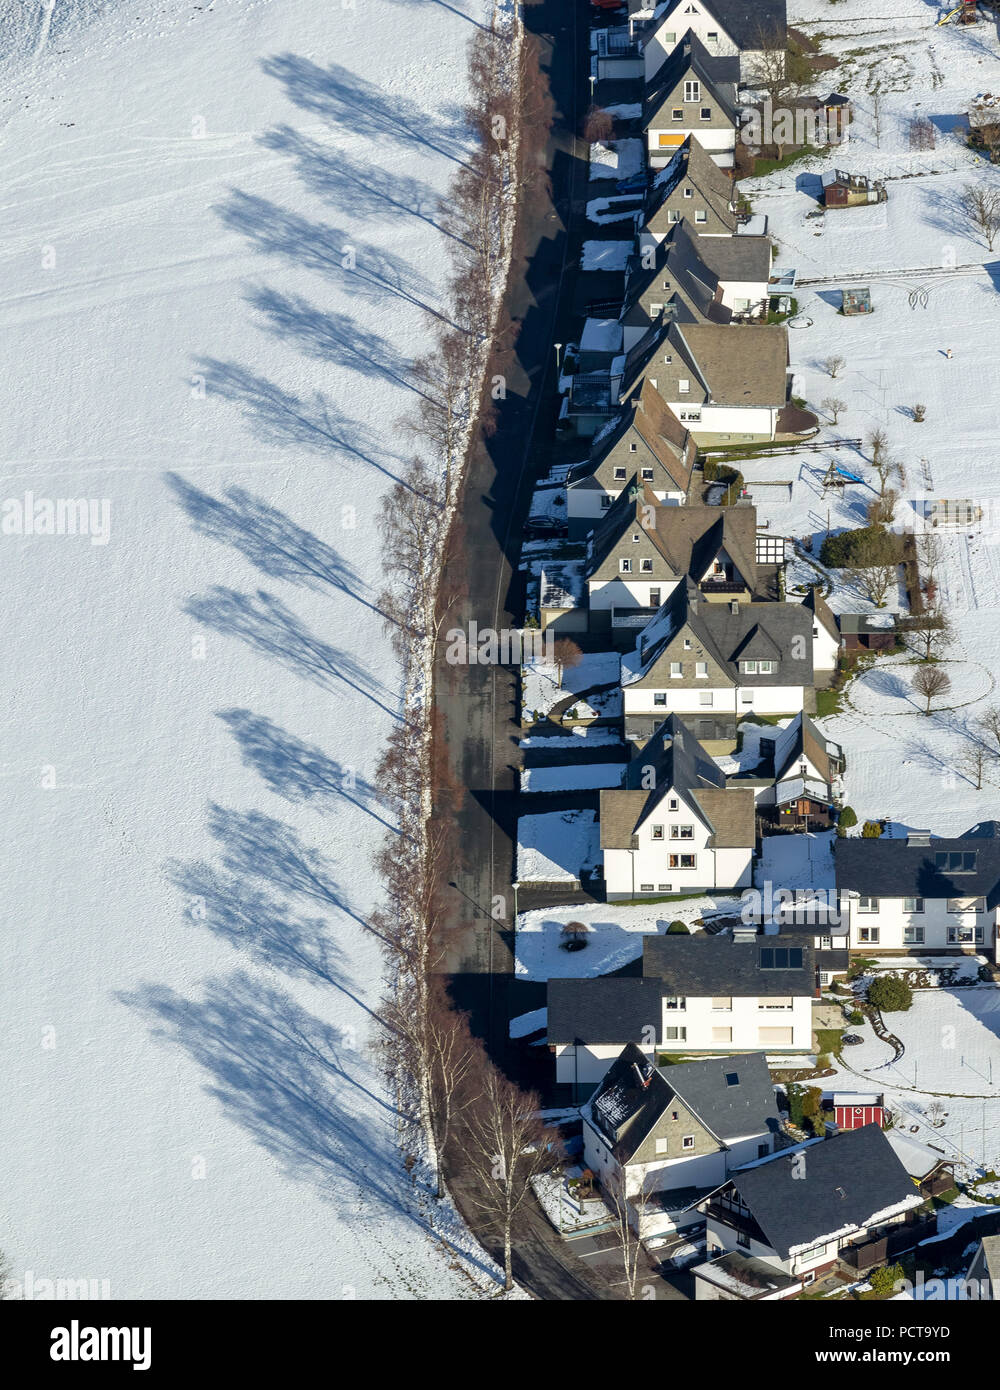 Kirchstraße, strada residenziale con case su un lato e le ombre degli alberi, neve, Holthausen, vista aerea di Schmallenberg, Sauerland Foto Stock